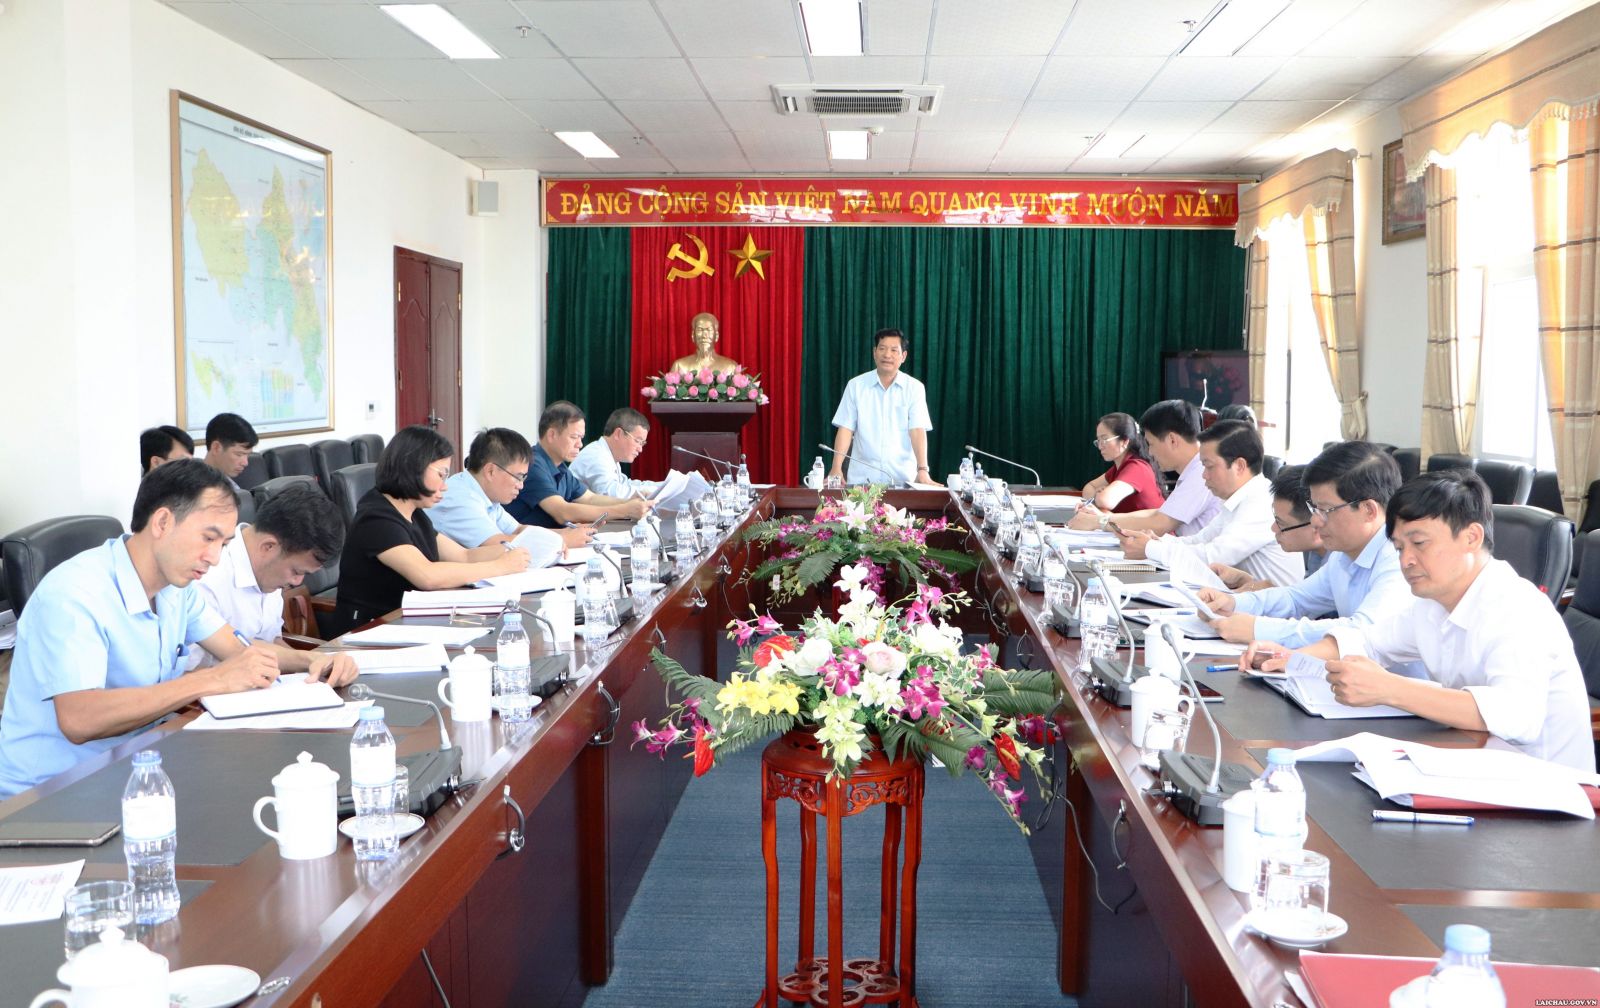 Phiên họp thông qua kết quả giám sát thực hiện các chính sách hỗ trợ phát triển nông nghiệp trên địa bàn tỉnh giai đoạn 2016 - 2020 của HĐND tỉnh Lai Châu Ảnh: Tường Vy			